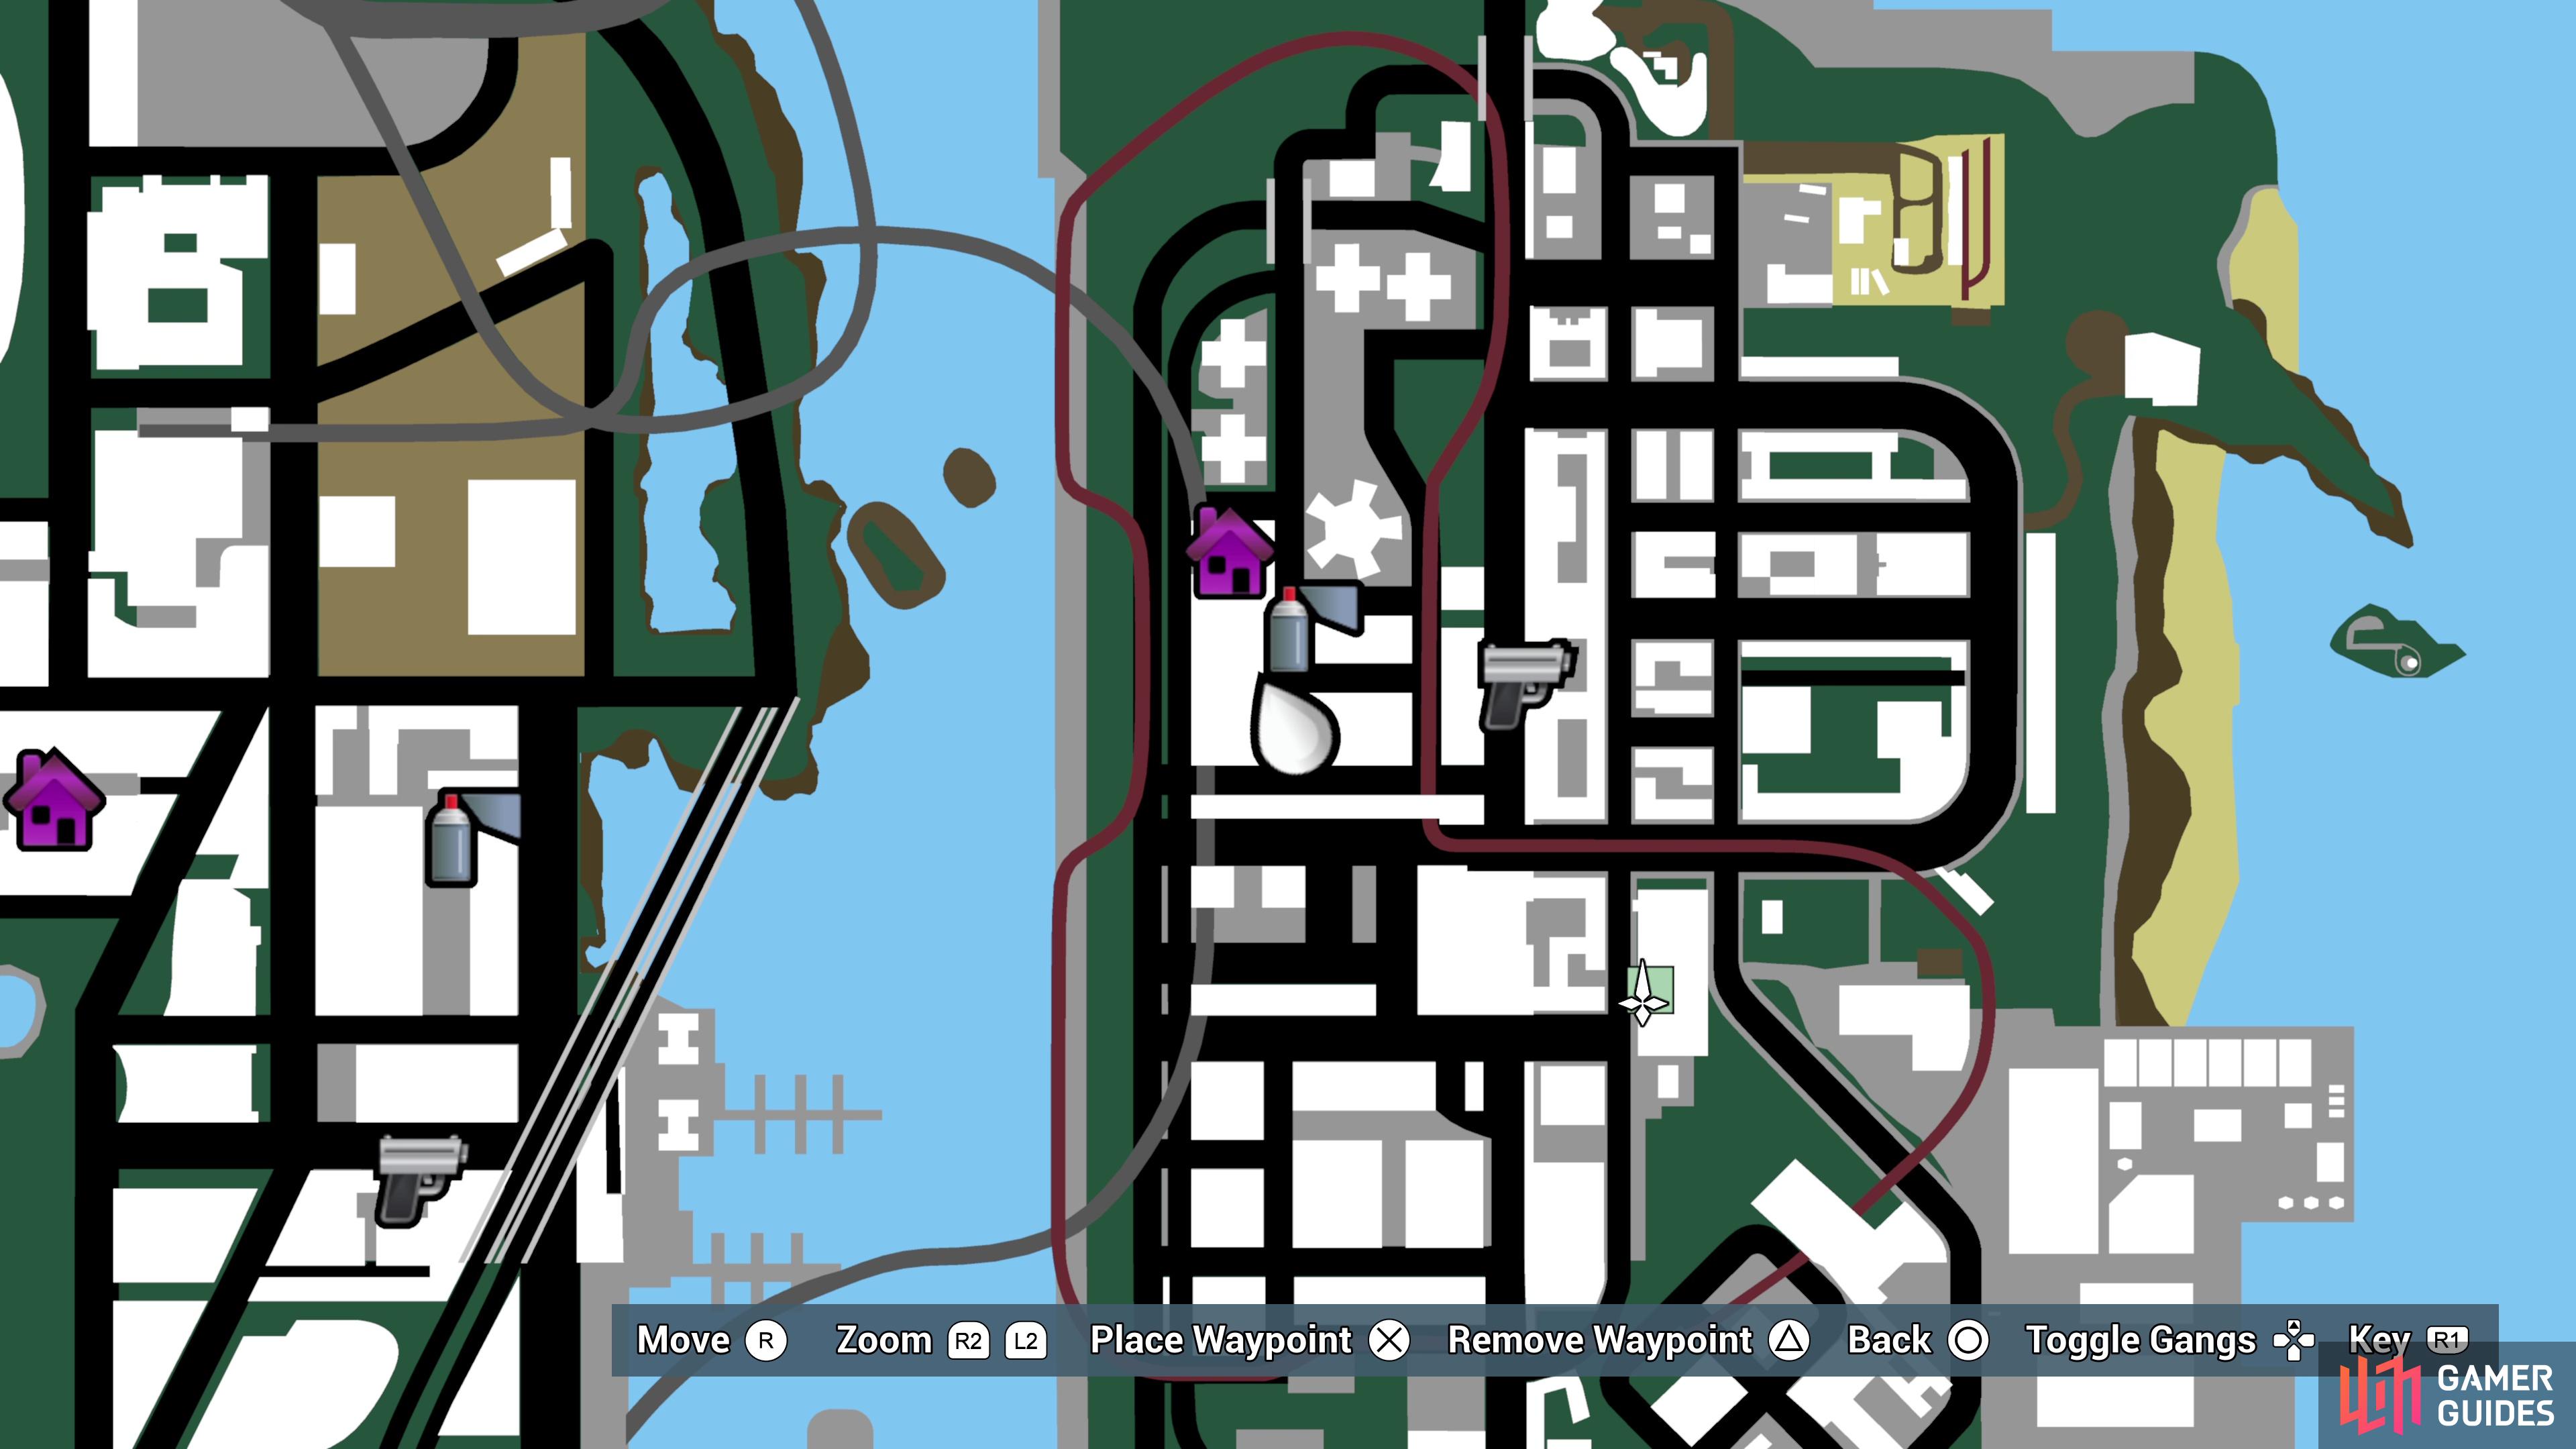 gta 3 map hidden packages